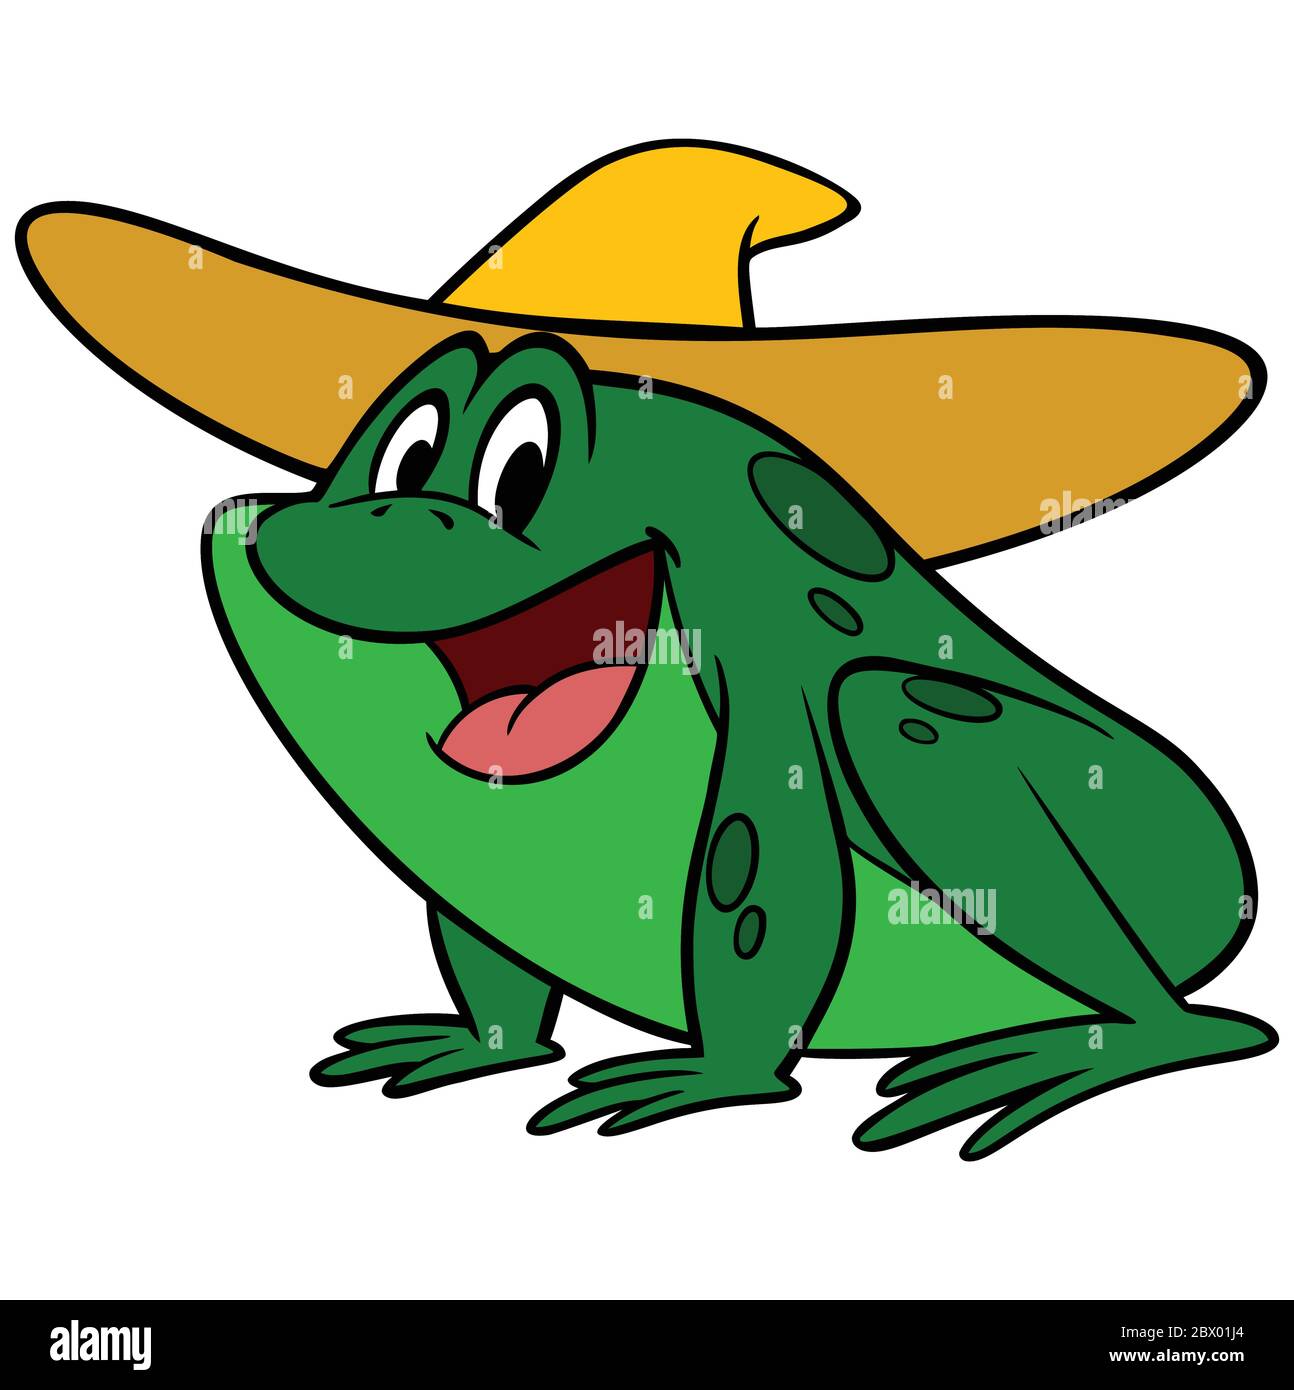 Hillbilly Frog- A Cartoon Illustration of a Hillbilly Frog. Stock Vector